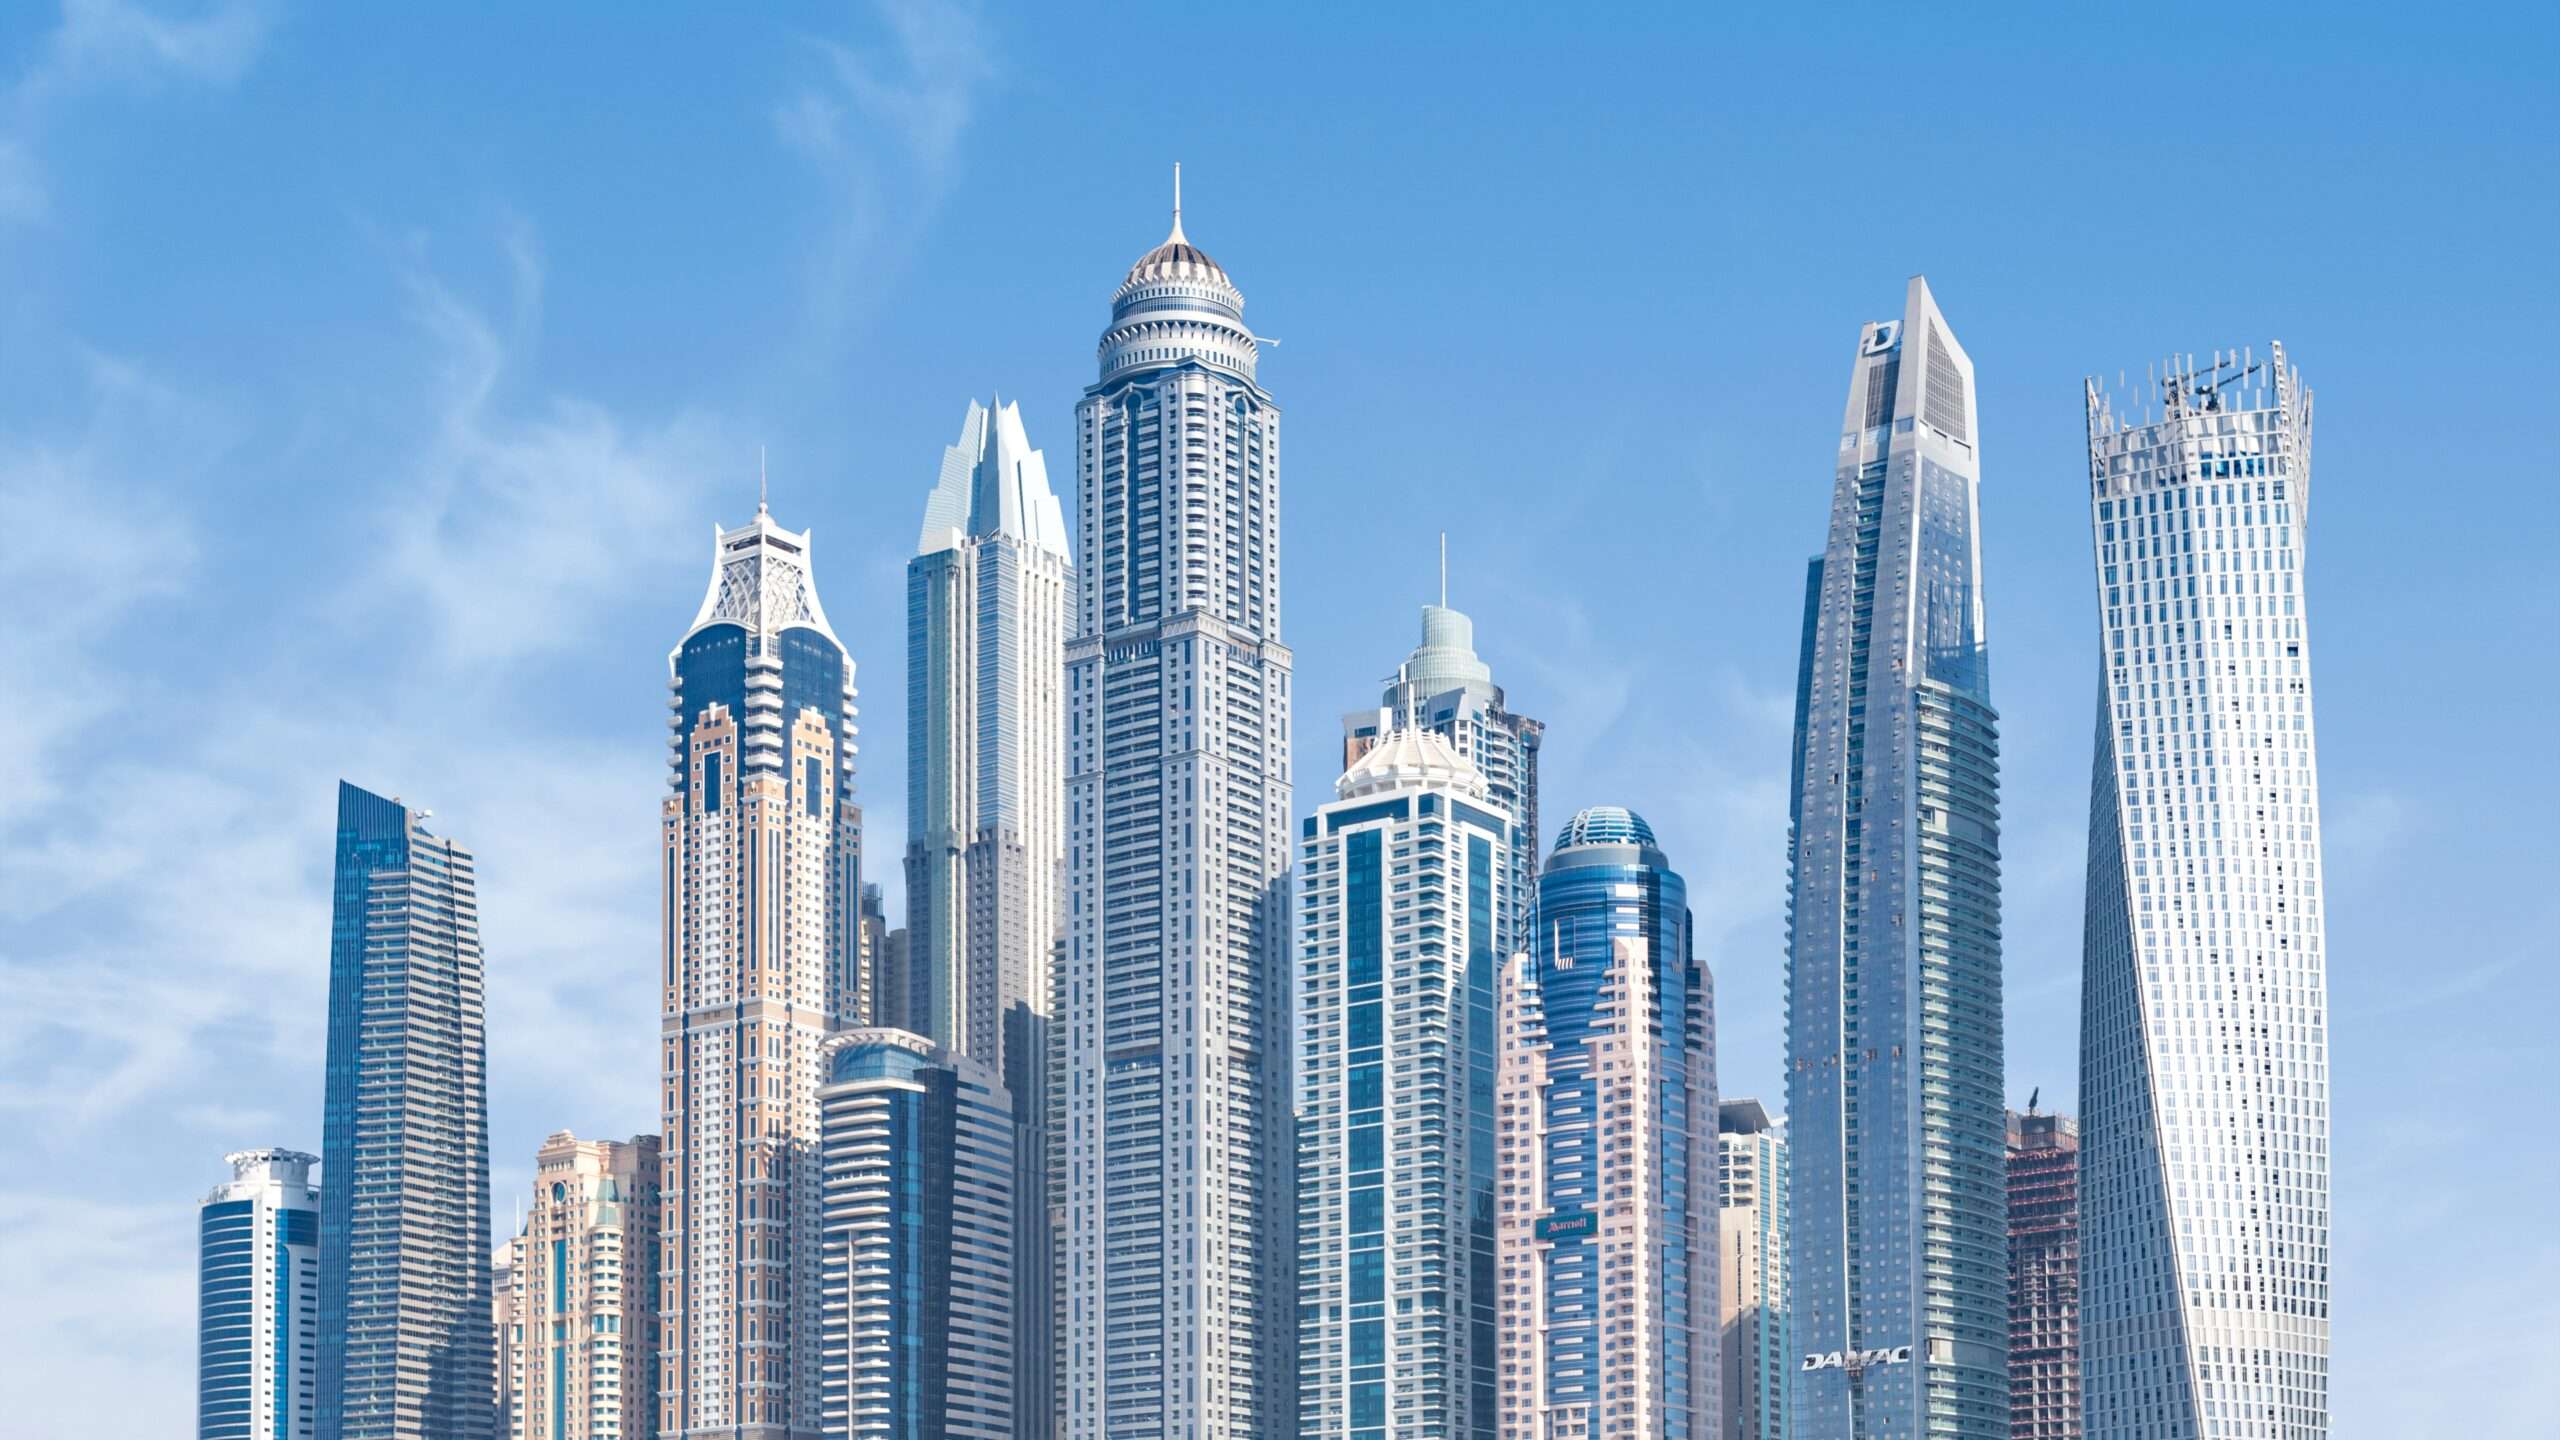 High-rise Buildings Under Dubai's Blue Sky